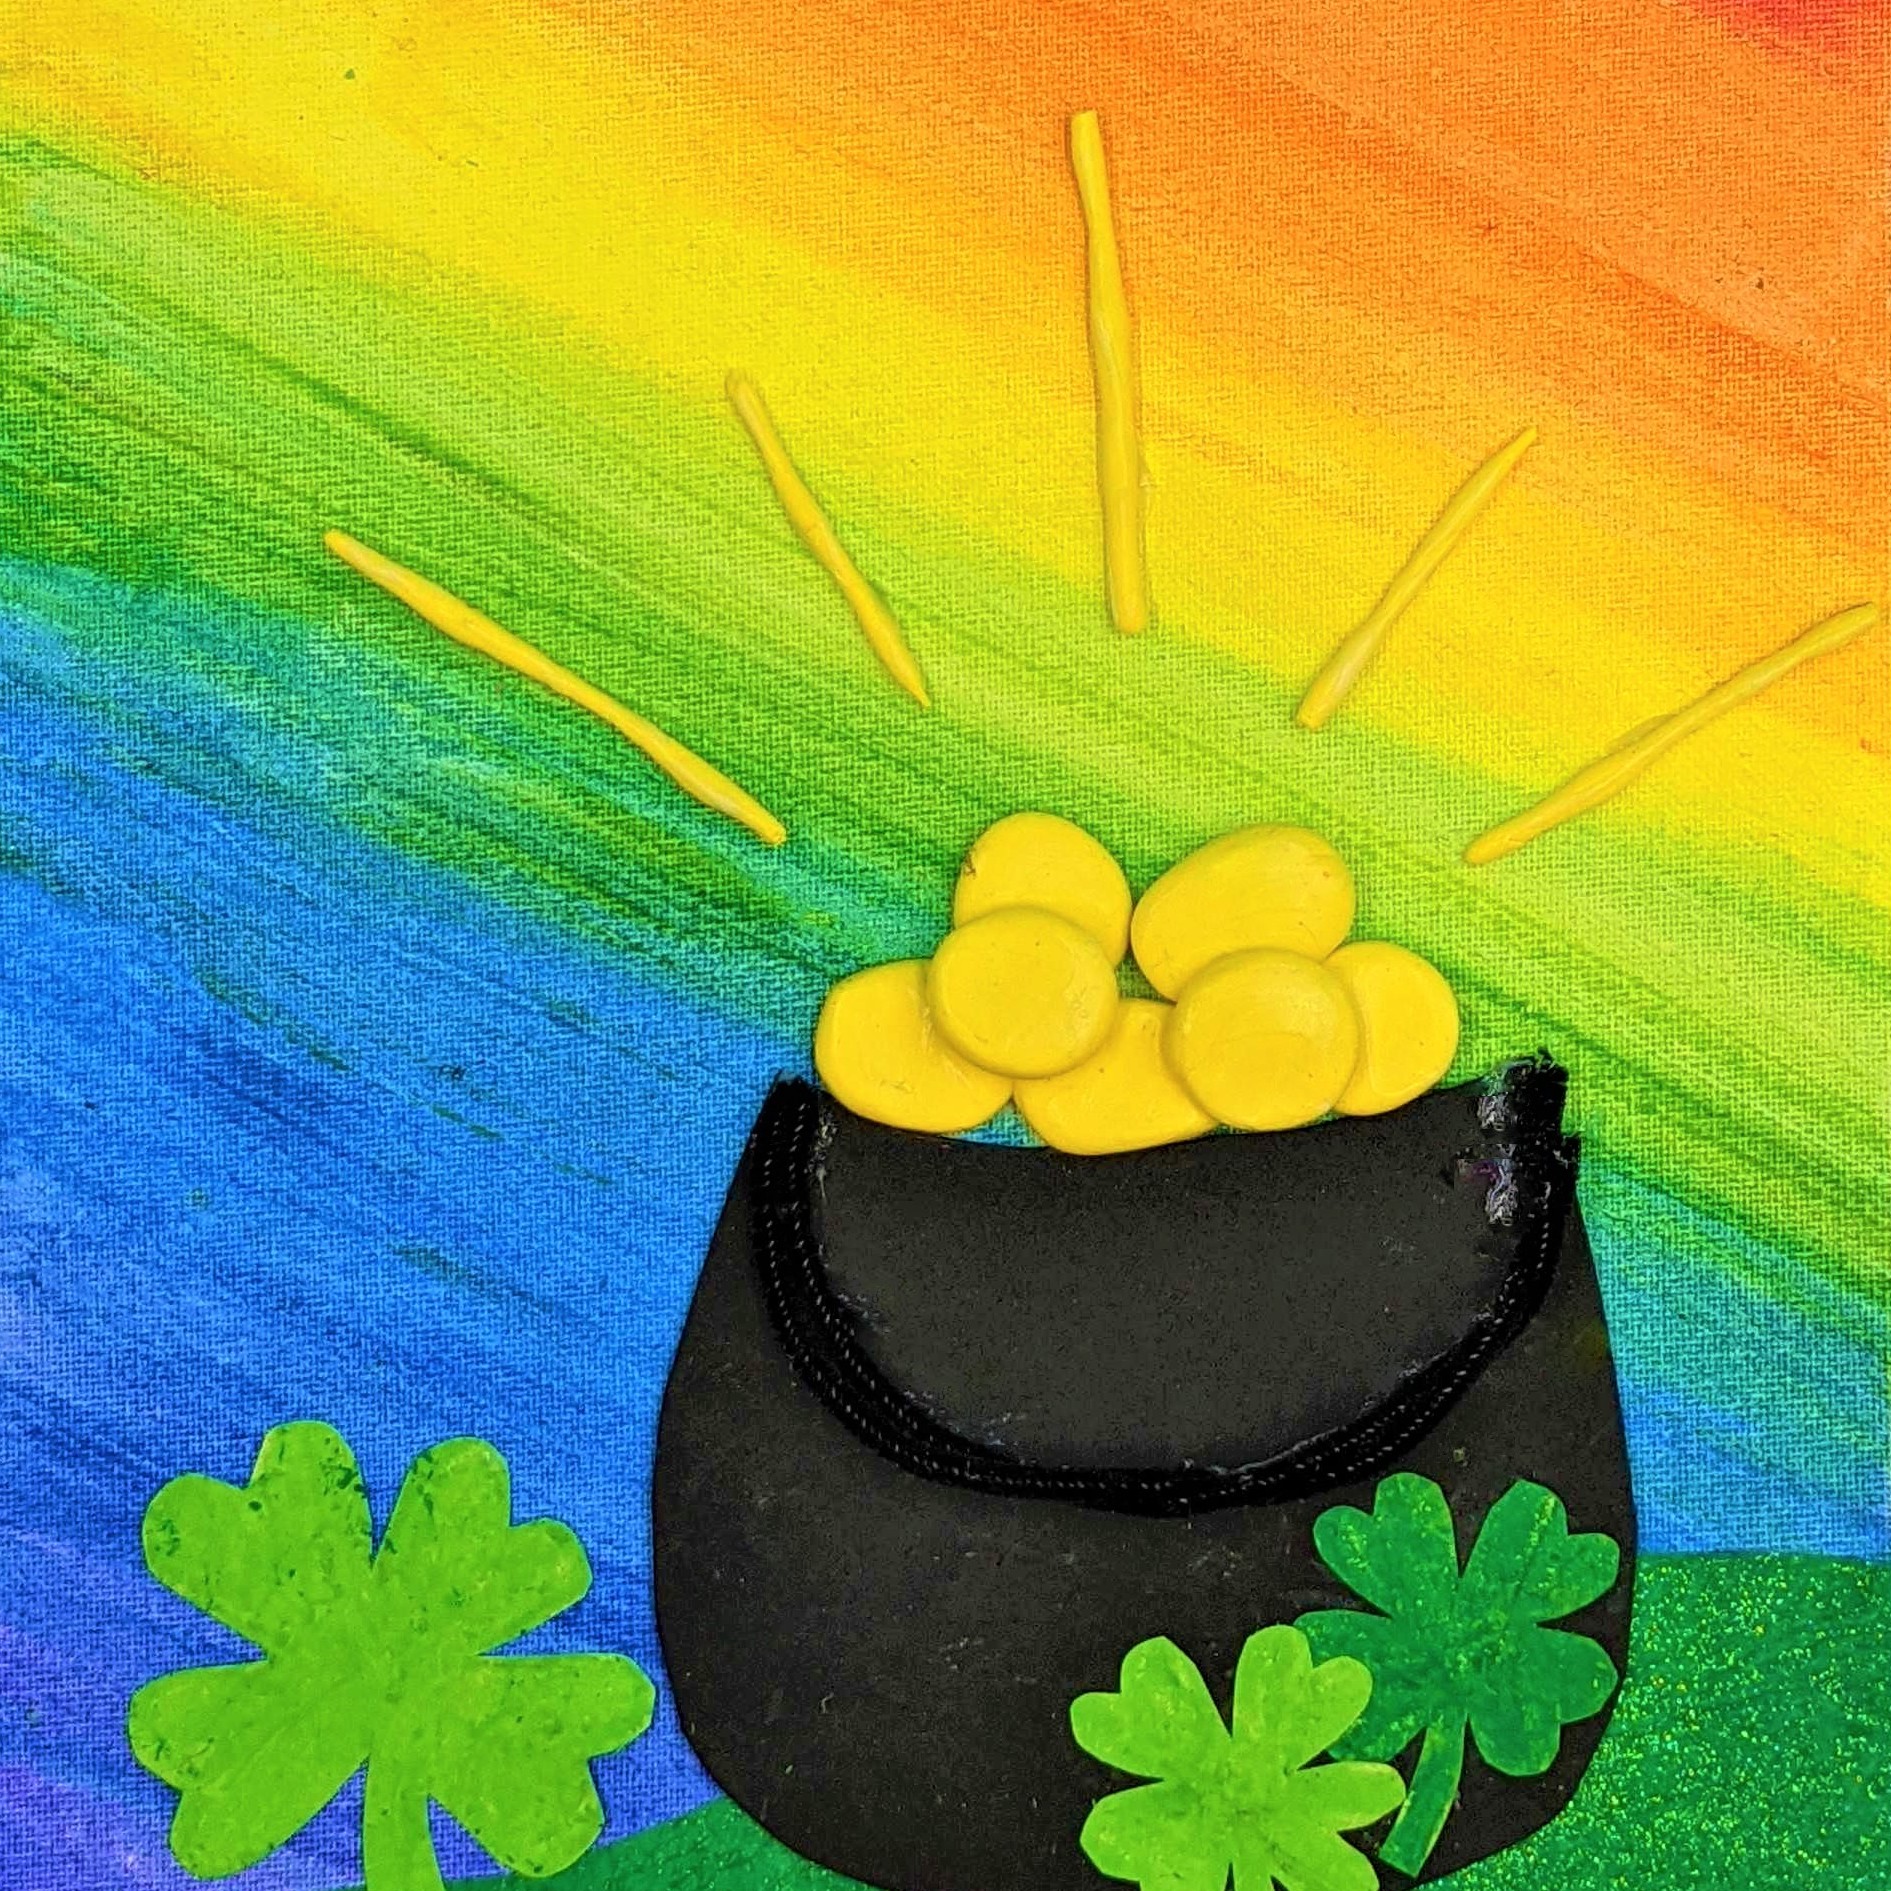 Kidcreate Studio - Dana Point, St. Patrick's Day Rainbow on Canvas Art Project